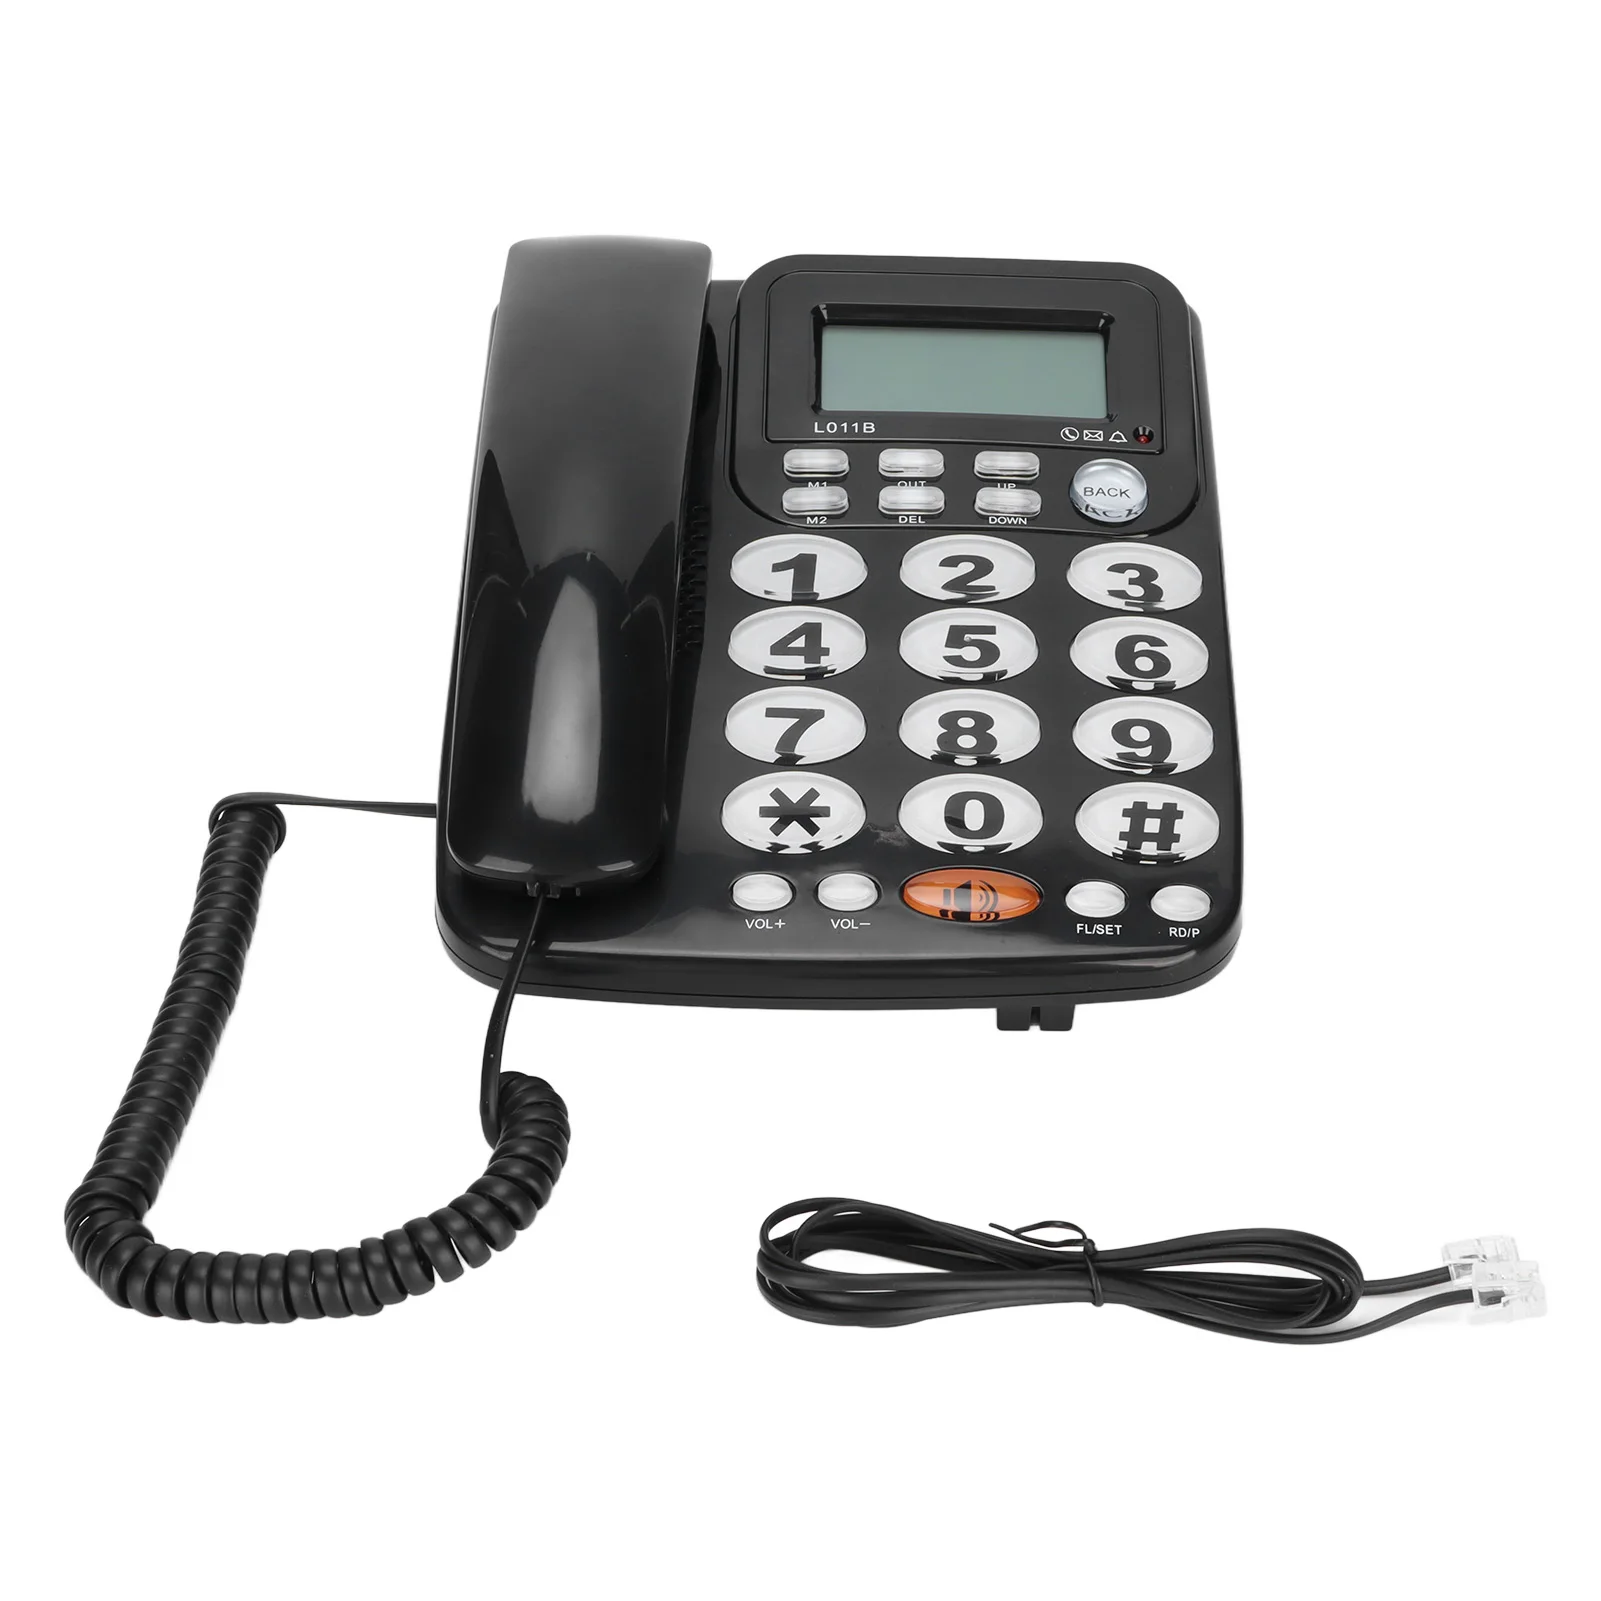 Large Buttons Landline Phone Caller ID Tilt Display Desk Corded Telephone Adjustable Sound Volume For Home Office Hotel